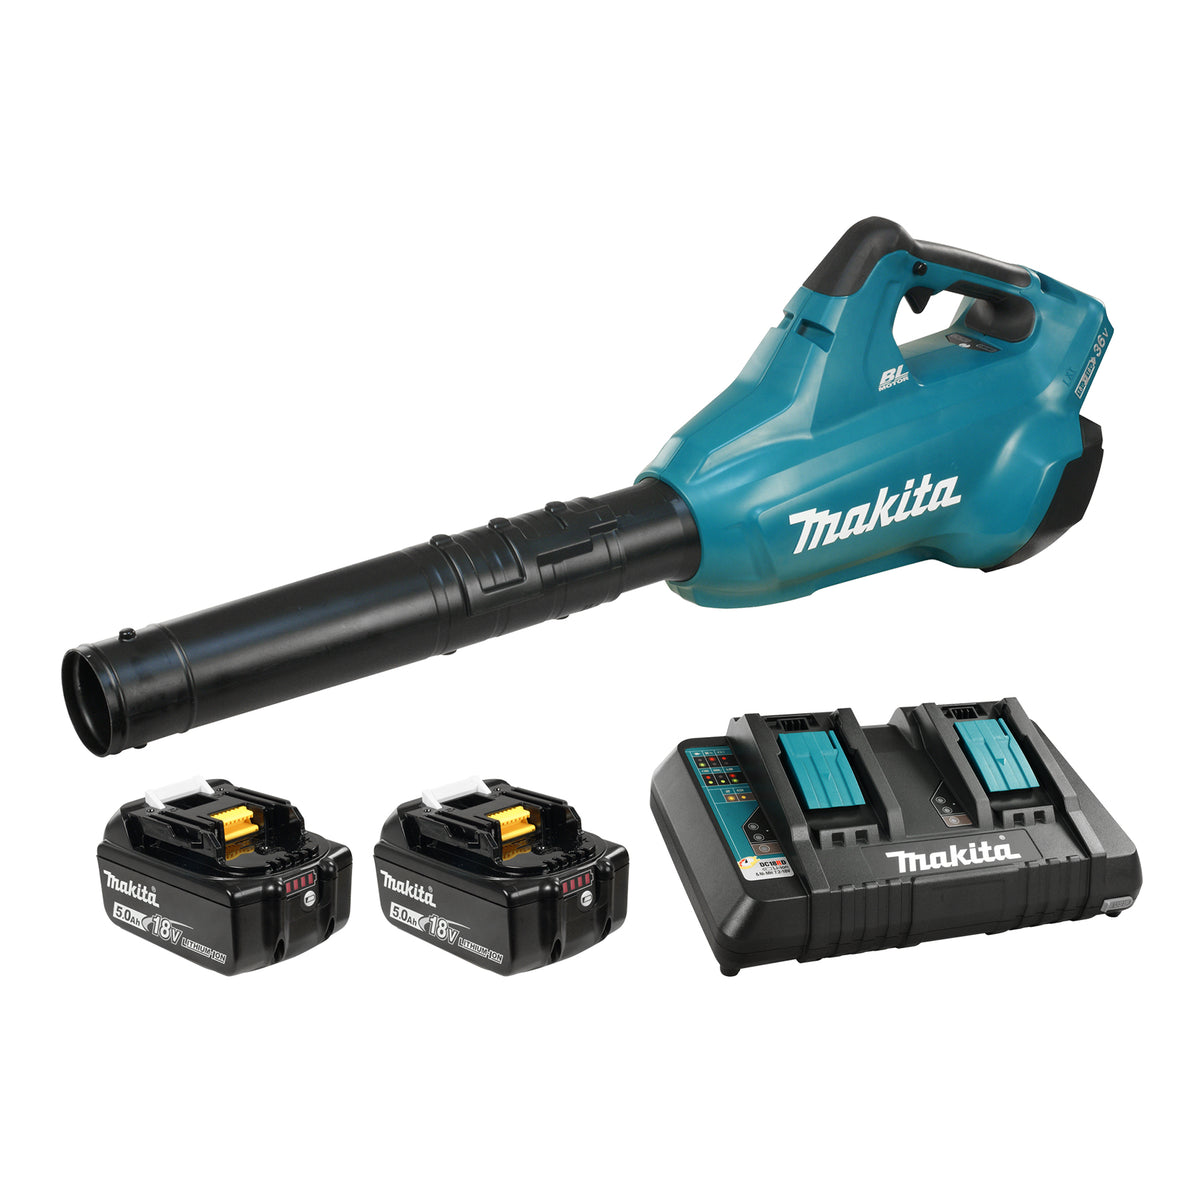 Makita 18Vx2 LXT Turbo Blower Kit | Lethbridge Fasteners – Lethbridge Fasteners and Tools